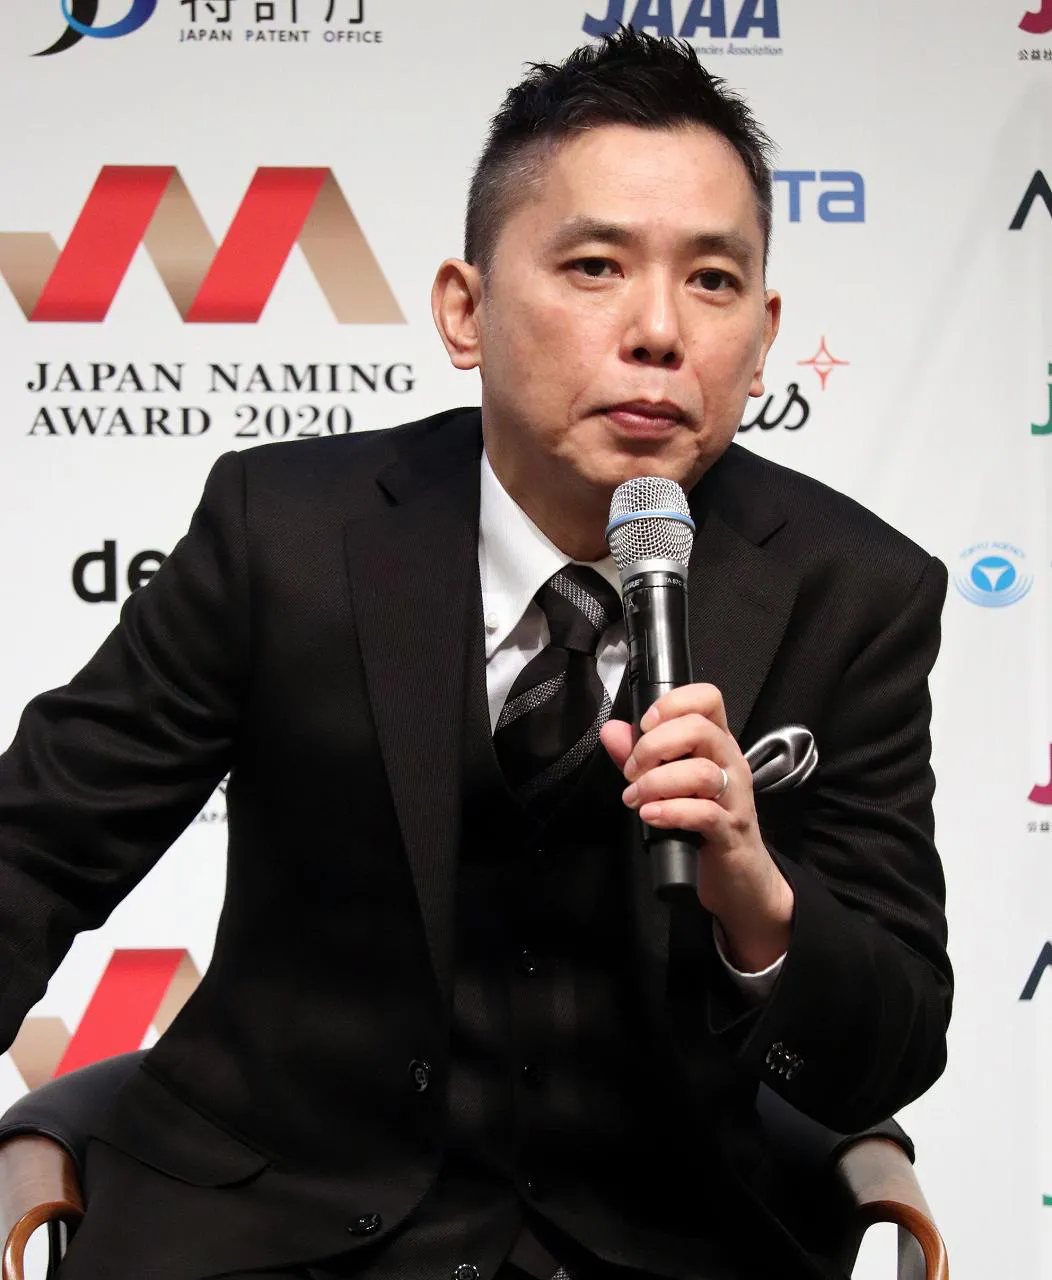 爆笑問題・太田光が「日本ネーミング大賞 2020」授賞式に登壇した